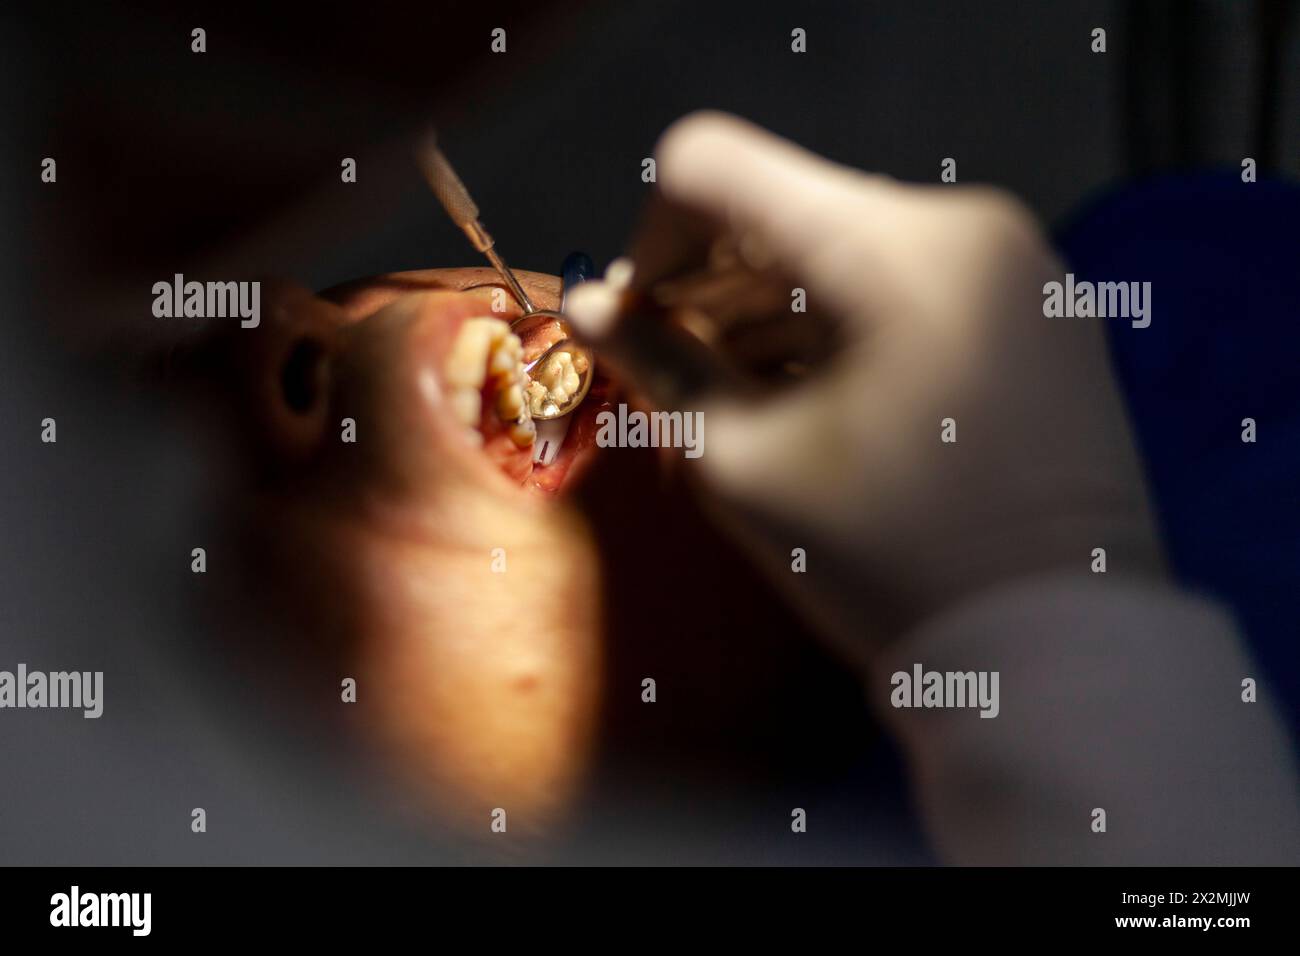 un homme adulte est vu par un dentiste, qui effectue une procédure avec une perceuse pour réparer une cavité dans une dent molaire. Banque D'Images